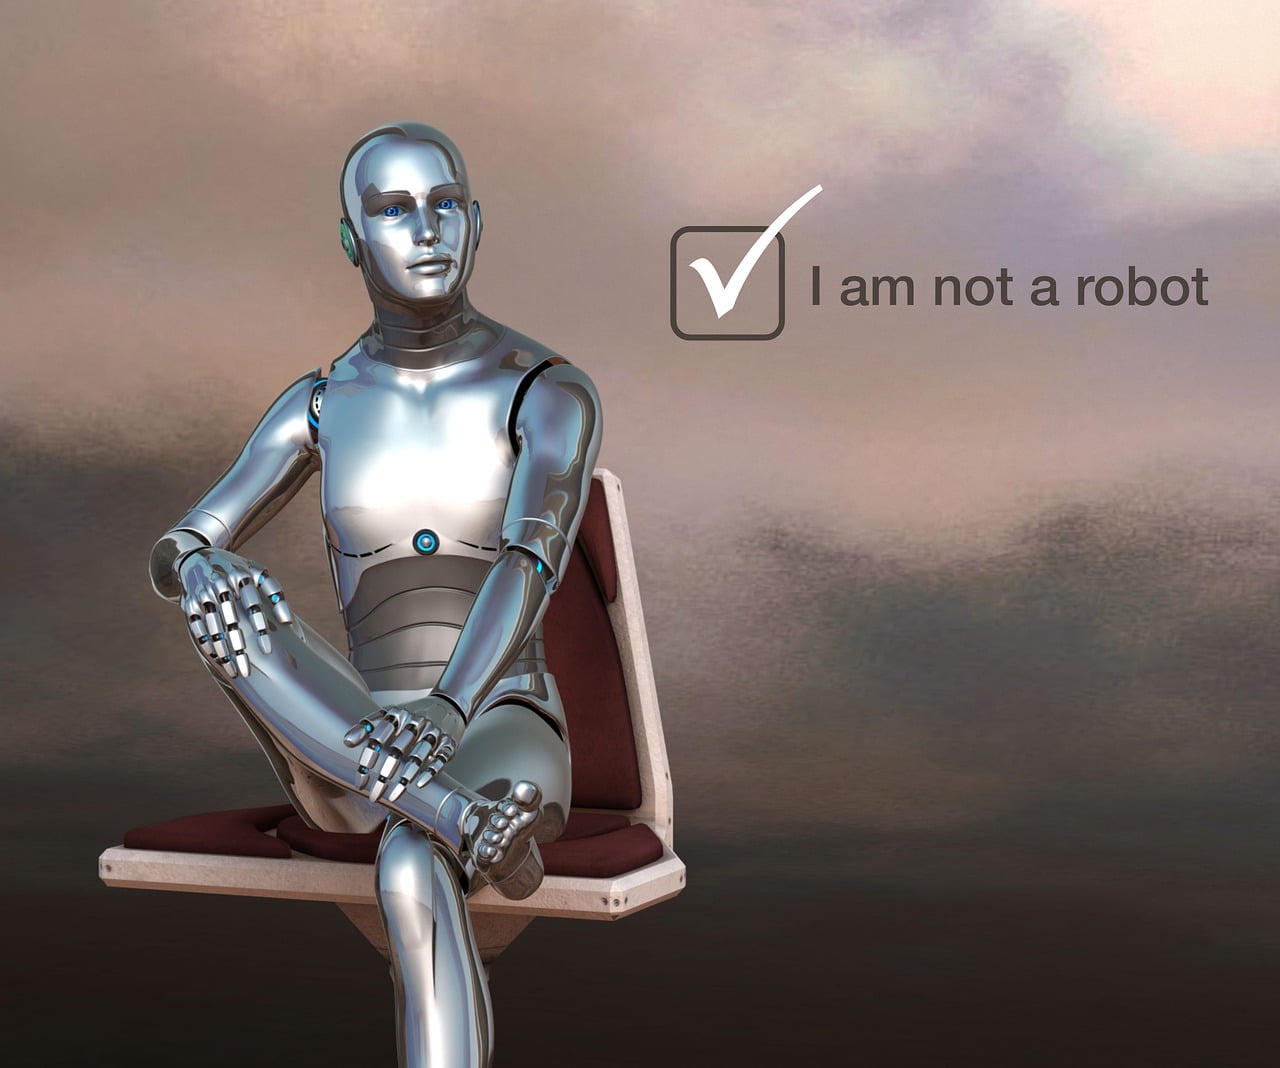 Ros Film Festival recibe 335 cortometrajes de robots a concurso